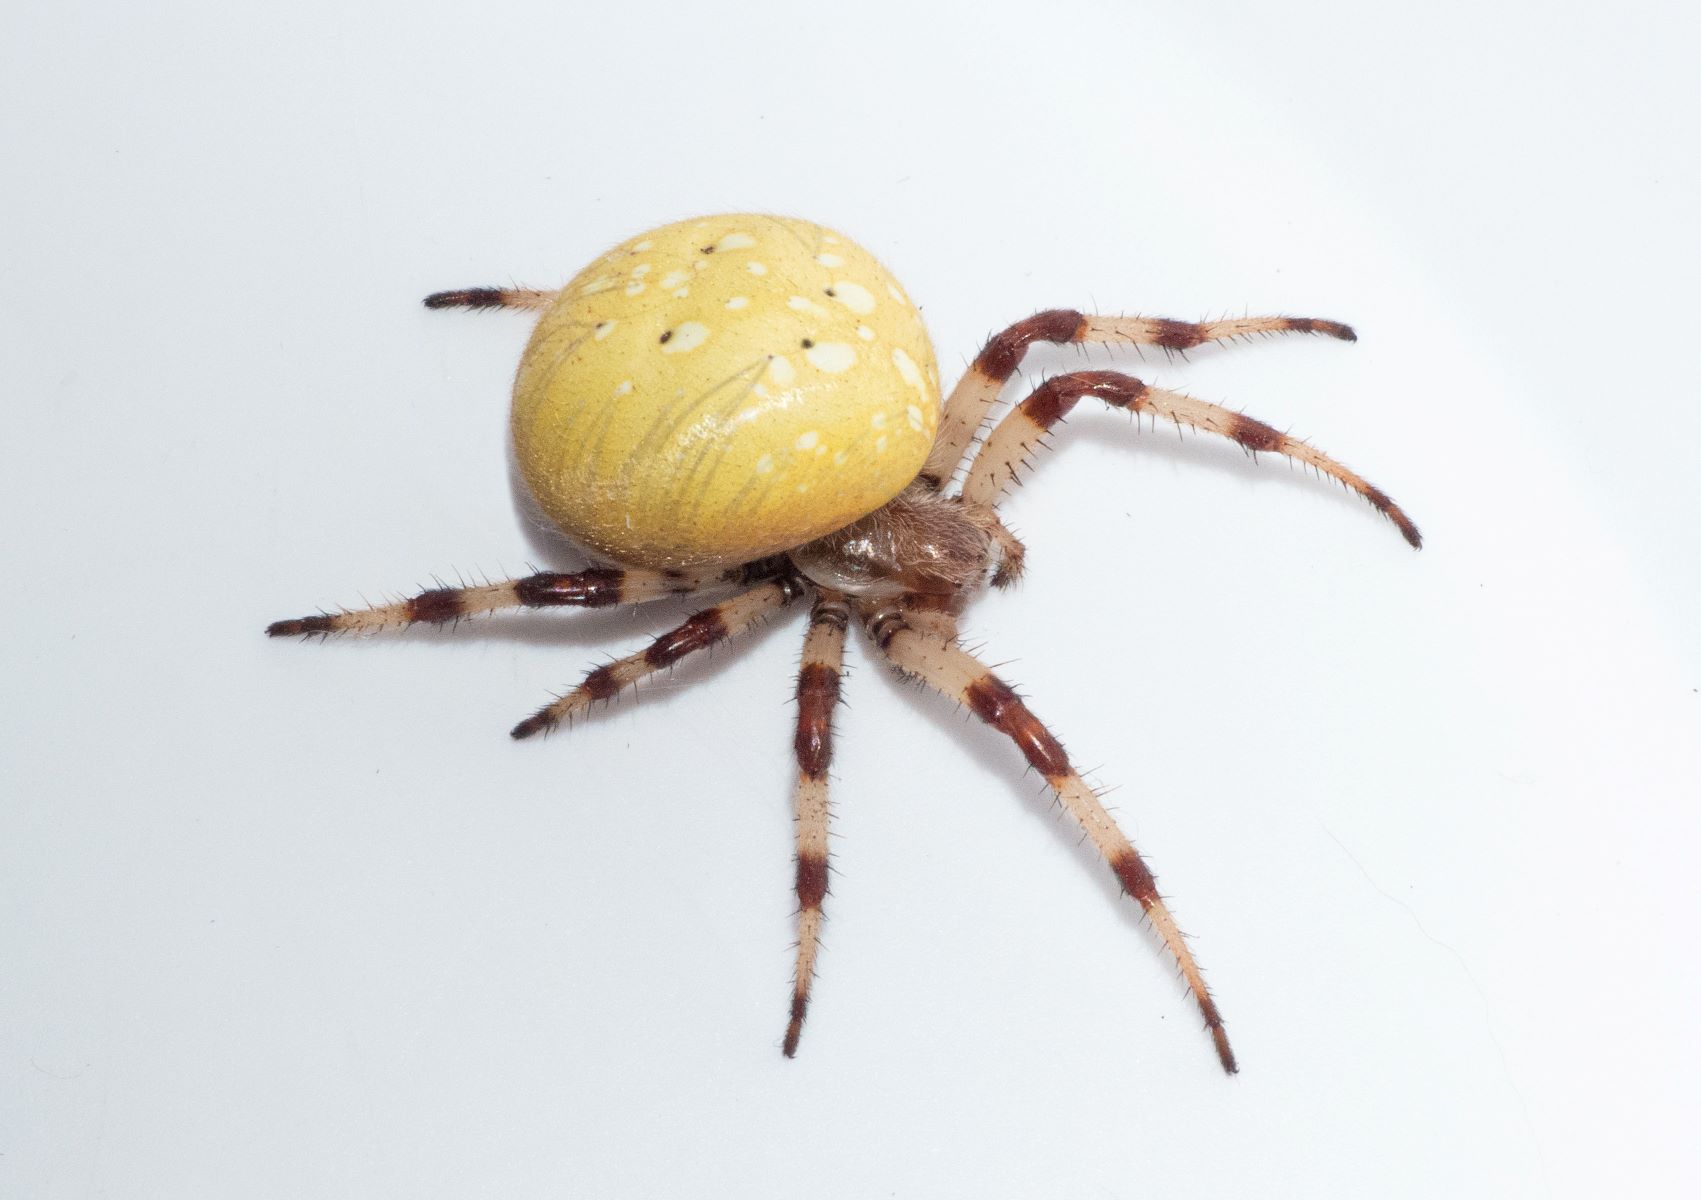 19-shamrock-spider-facts